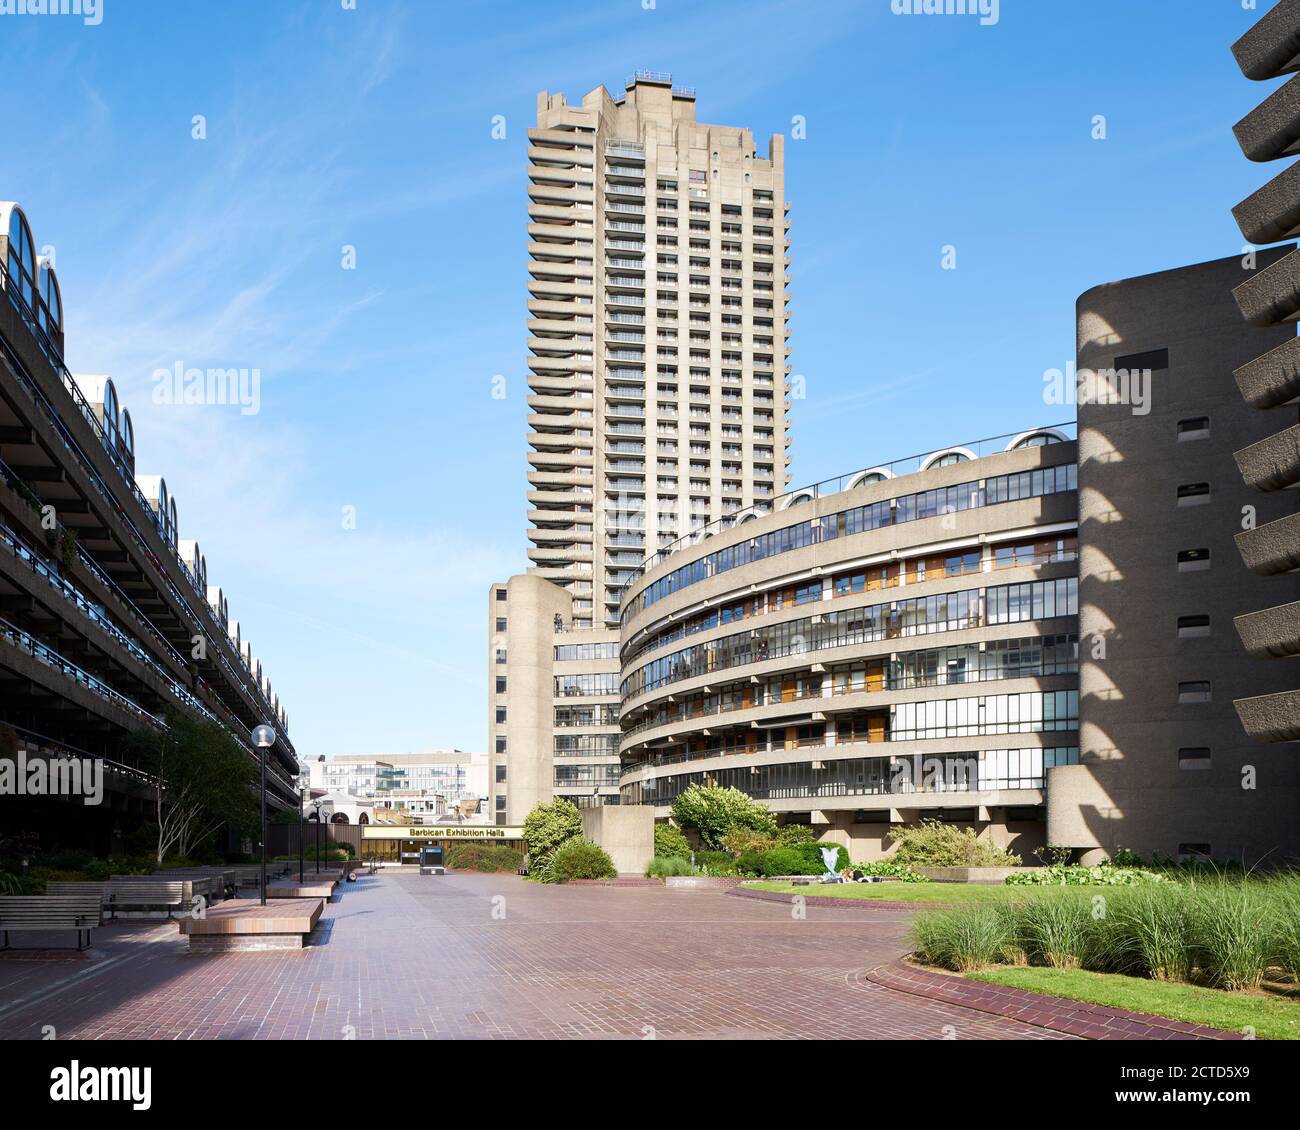 Außenansicht das Barbican Estate, City of London UK. Entworfen von den Architekten Chamberlin, Powell und Bon. Erbaut 1965–1976. Stockfoto